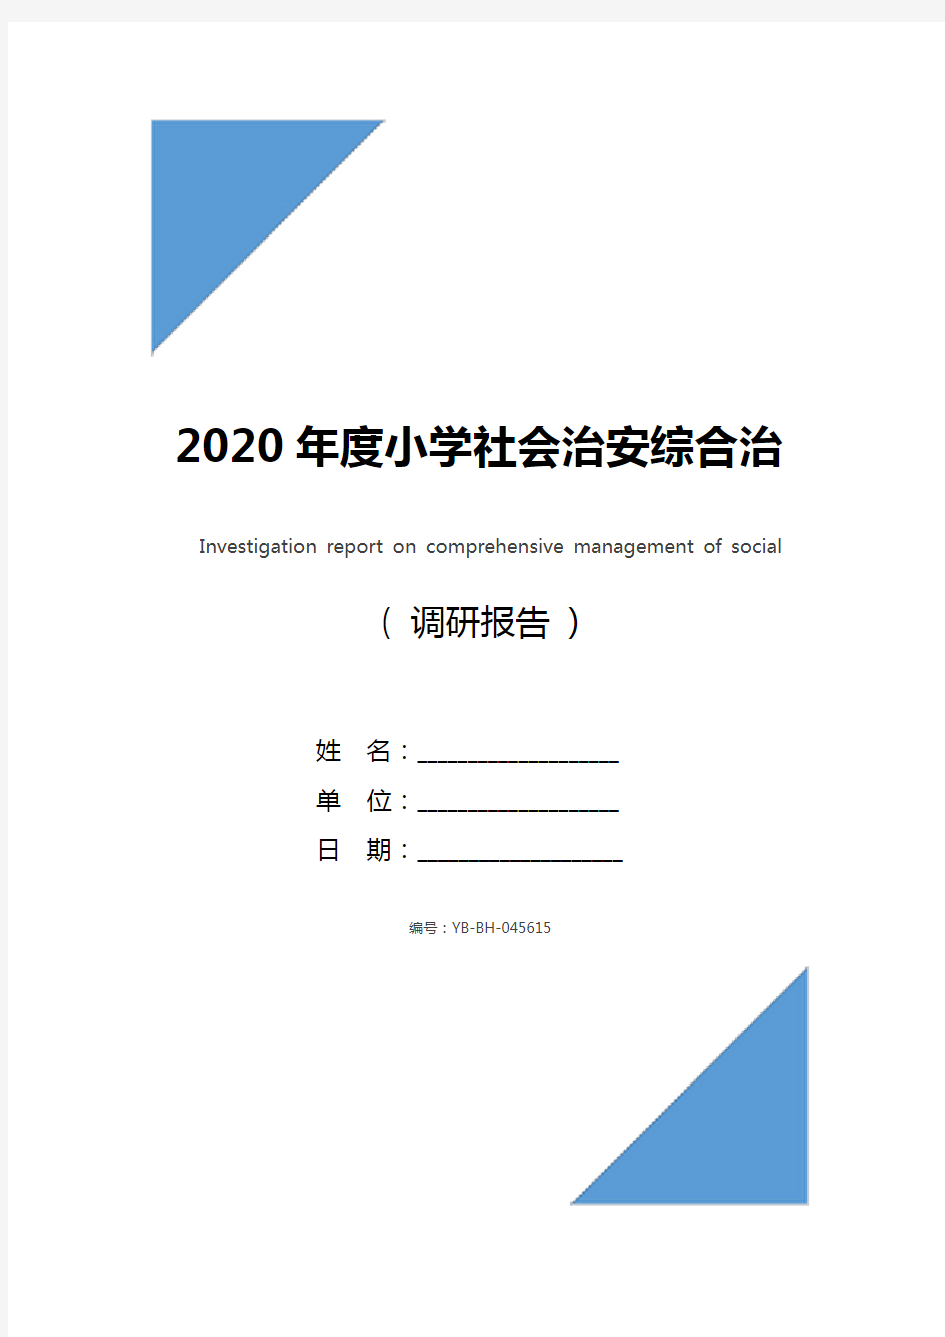 2020年度小学社会治安综合治理工作调研报告